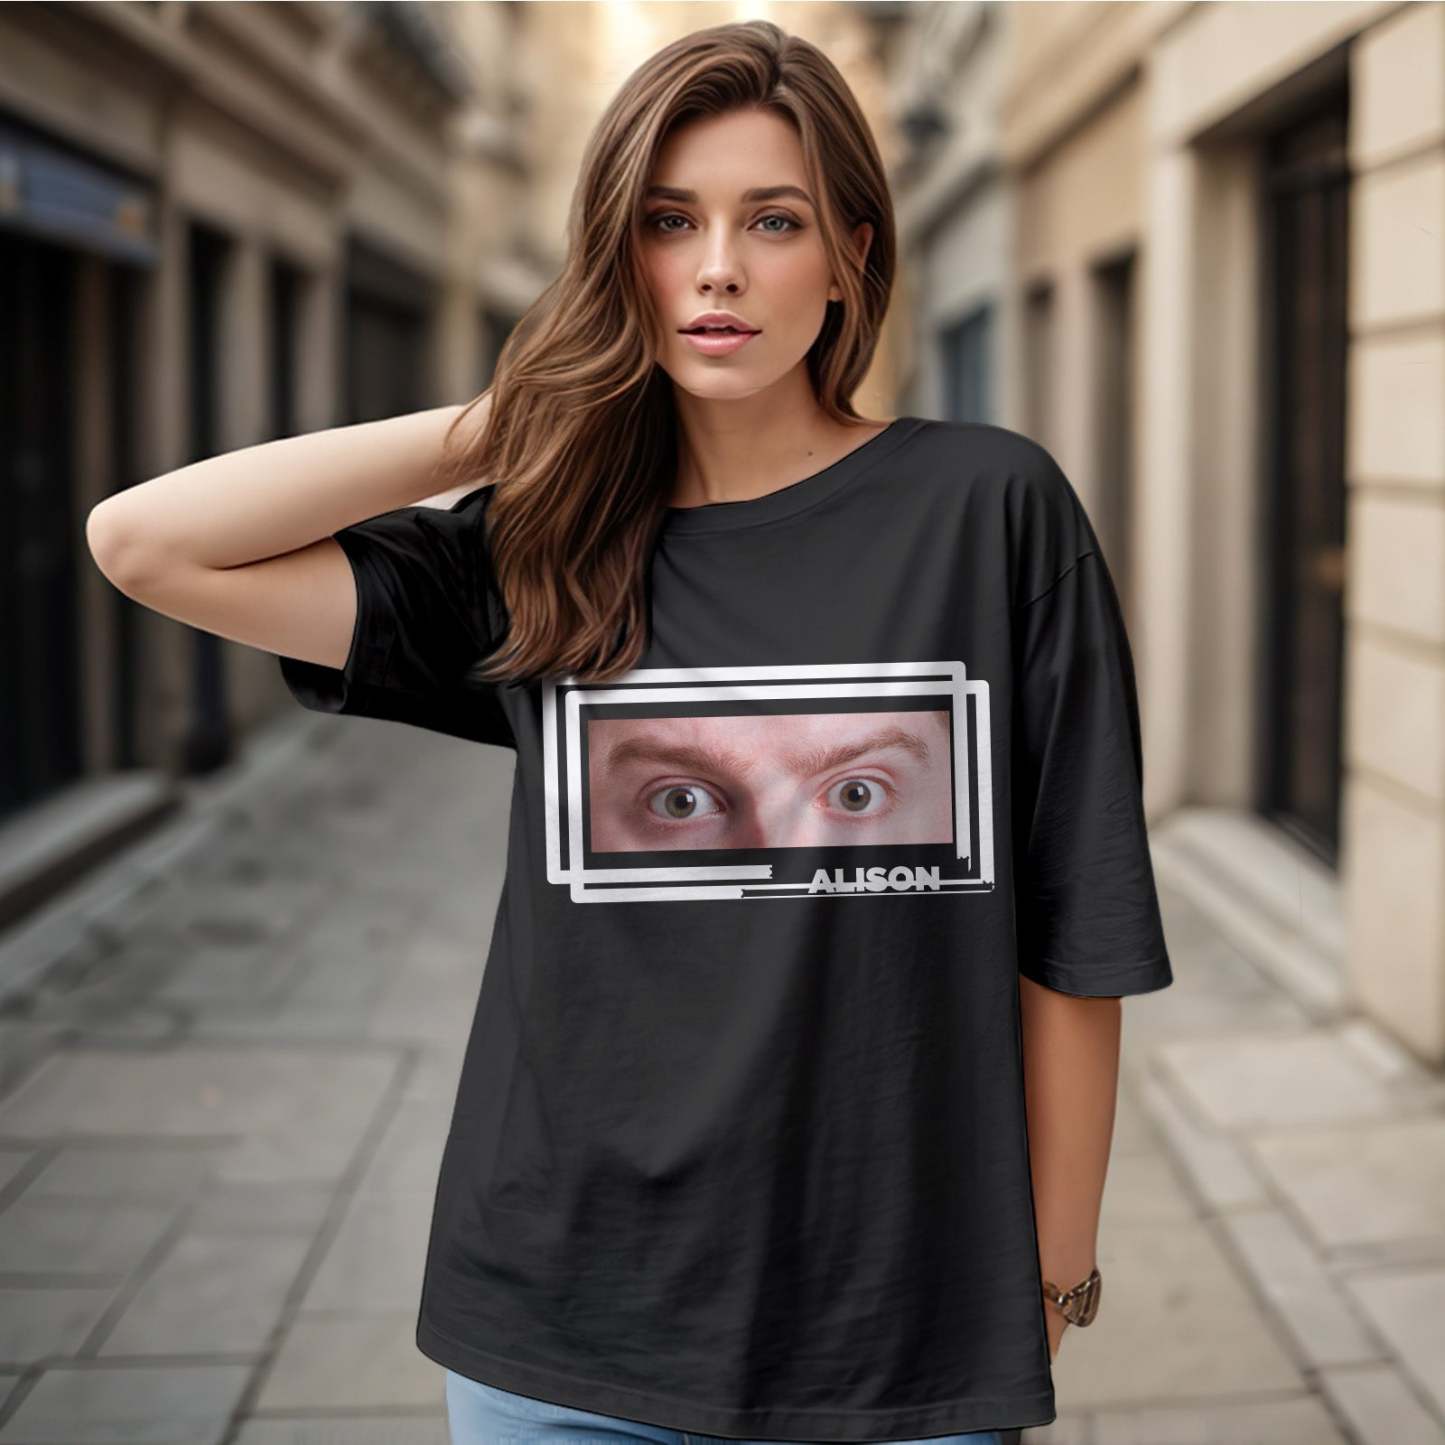 T-shirt Mit Individuellen Augen Und Namen, Lustiges T-shirt Mit Großen Augen, Geschenk Für Paare - 